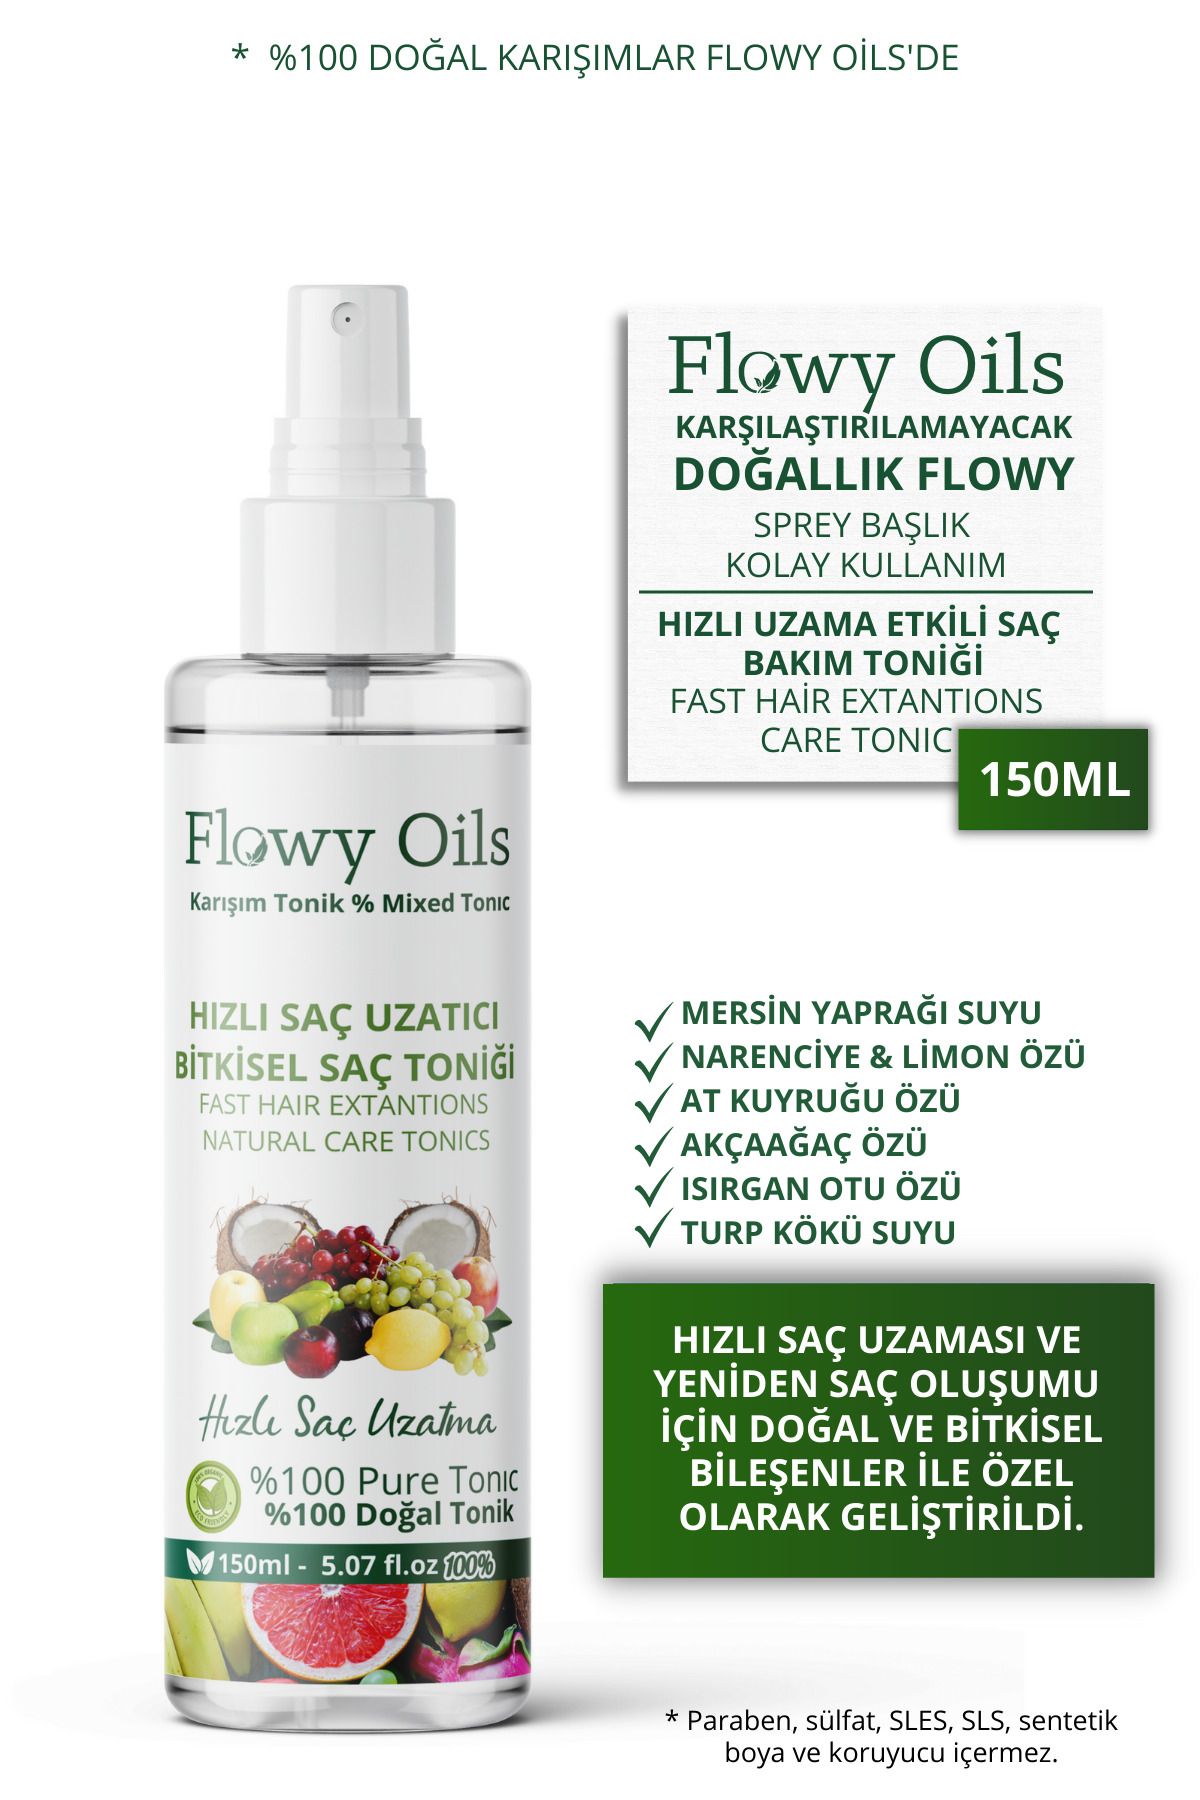 Flowy Oils Hızlı Saç Uzatma Yeni Saç Oluşumu Etkili %100 Doğal Ve Bitkisel Saç Toniği Sprey 150ml